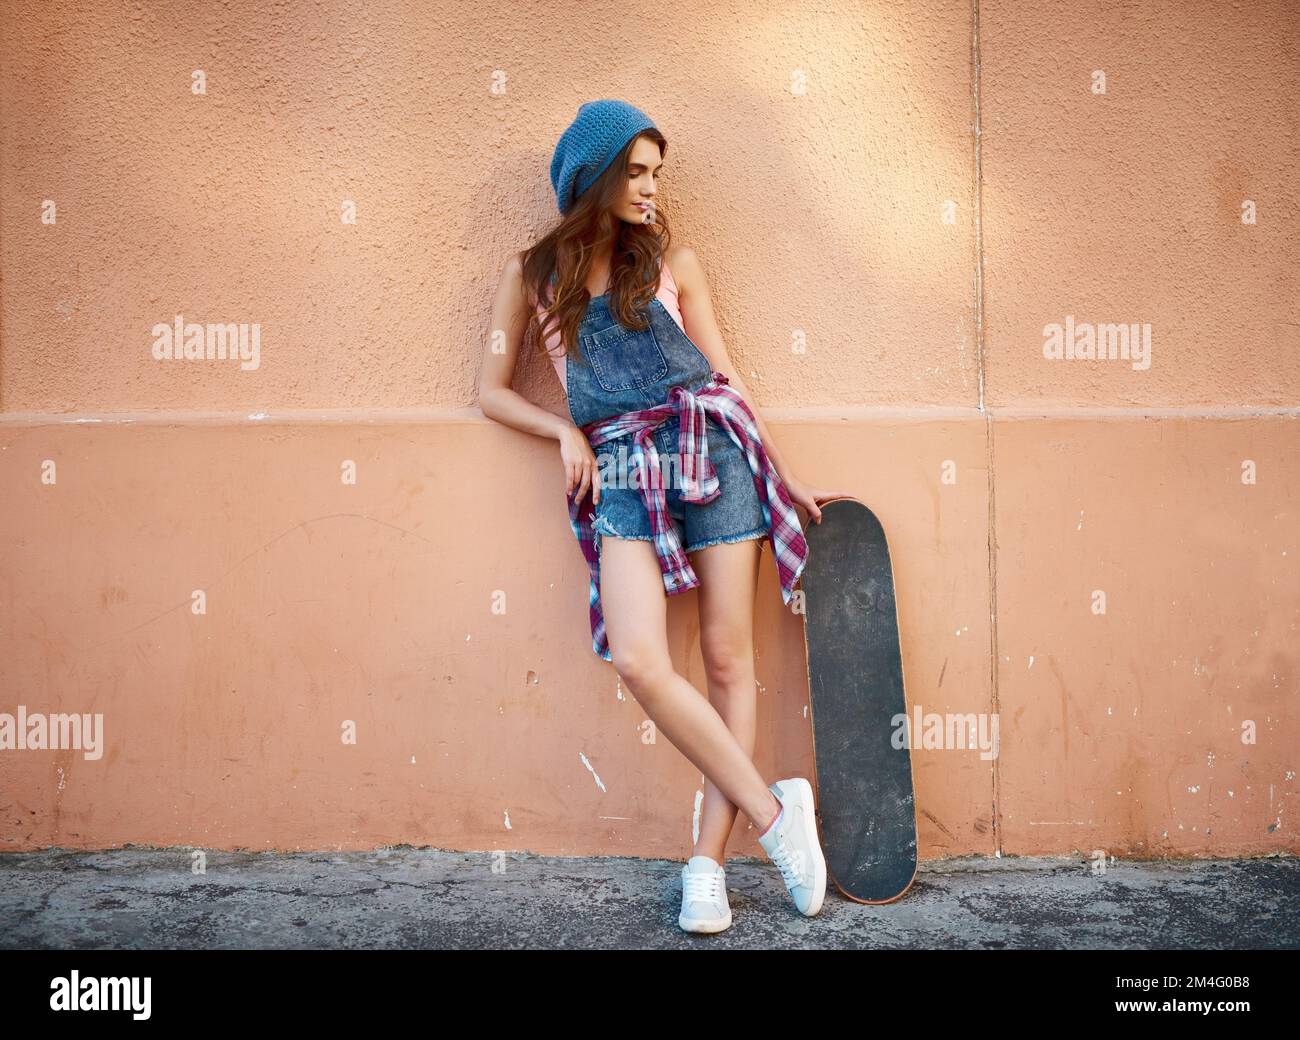 Le skateboarder et sa planche. une jeune femme insouciante debout avec son skateboard sur fond orange. Banque D'Images